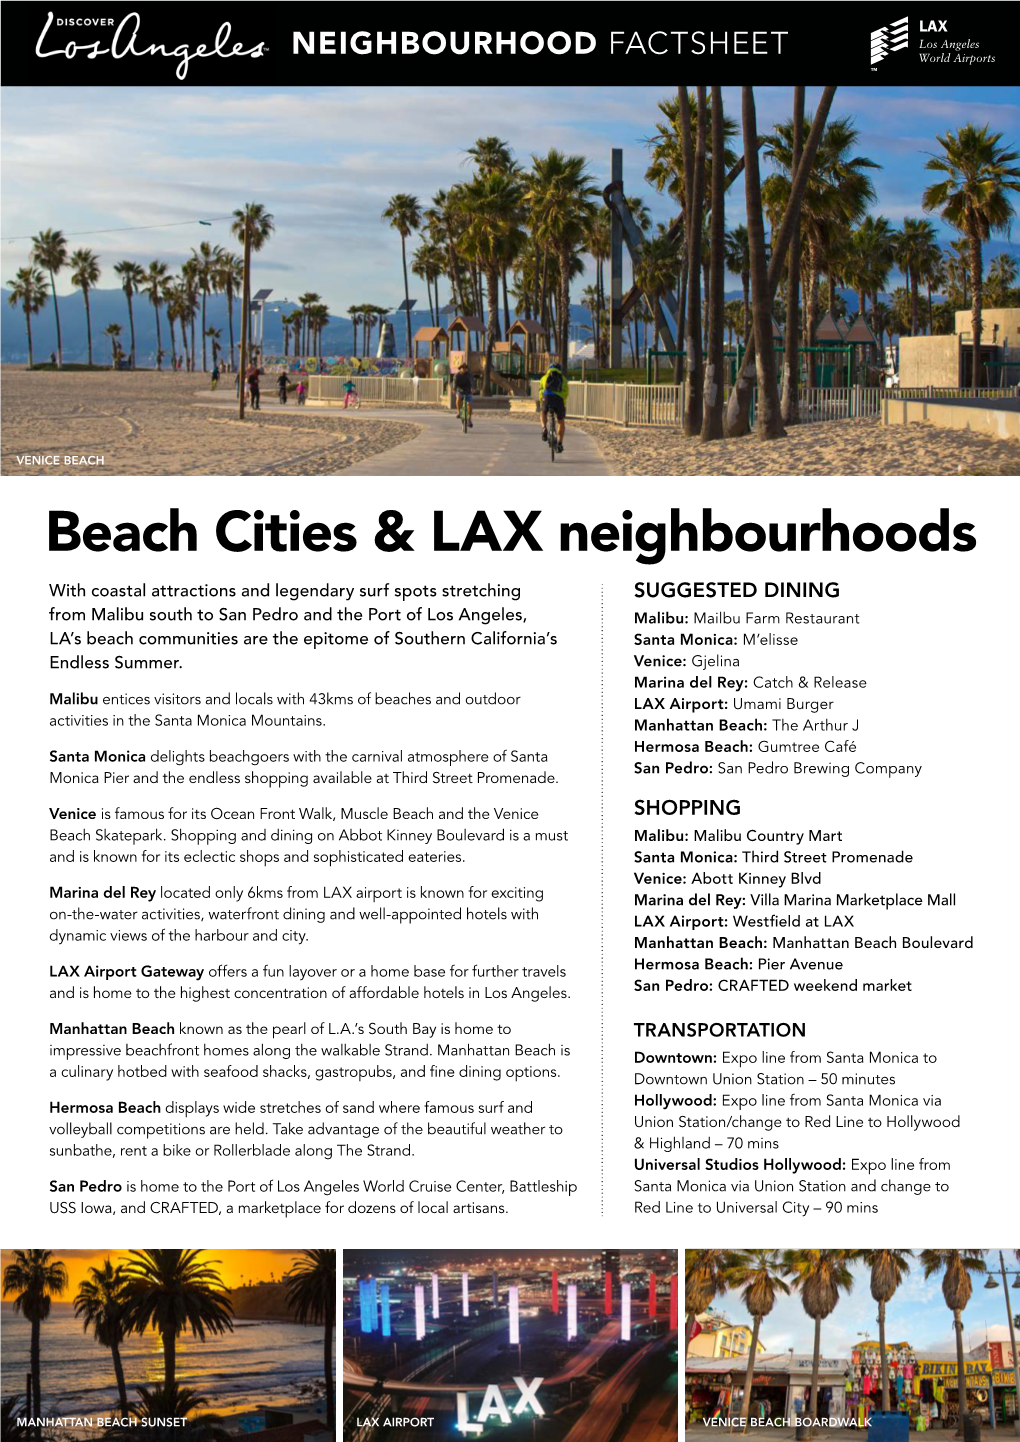 Beach Cities & LAX Neighbourhoods